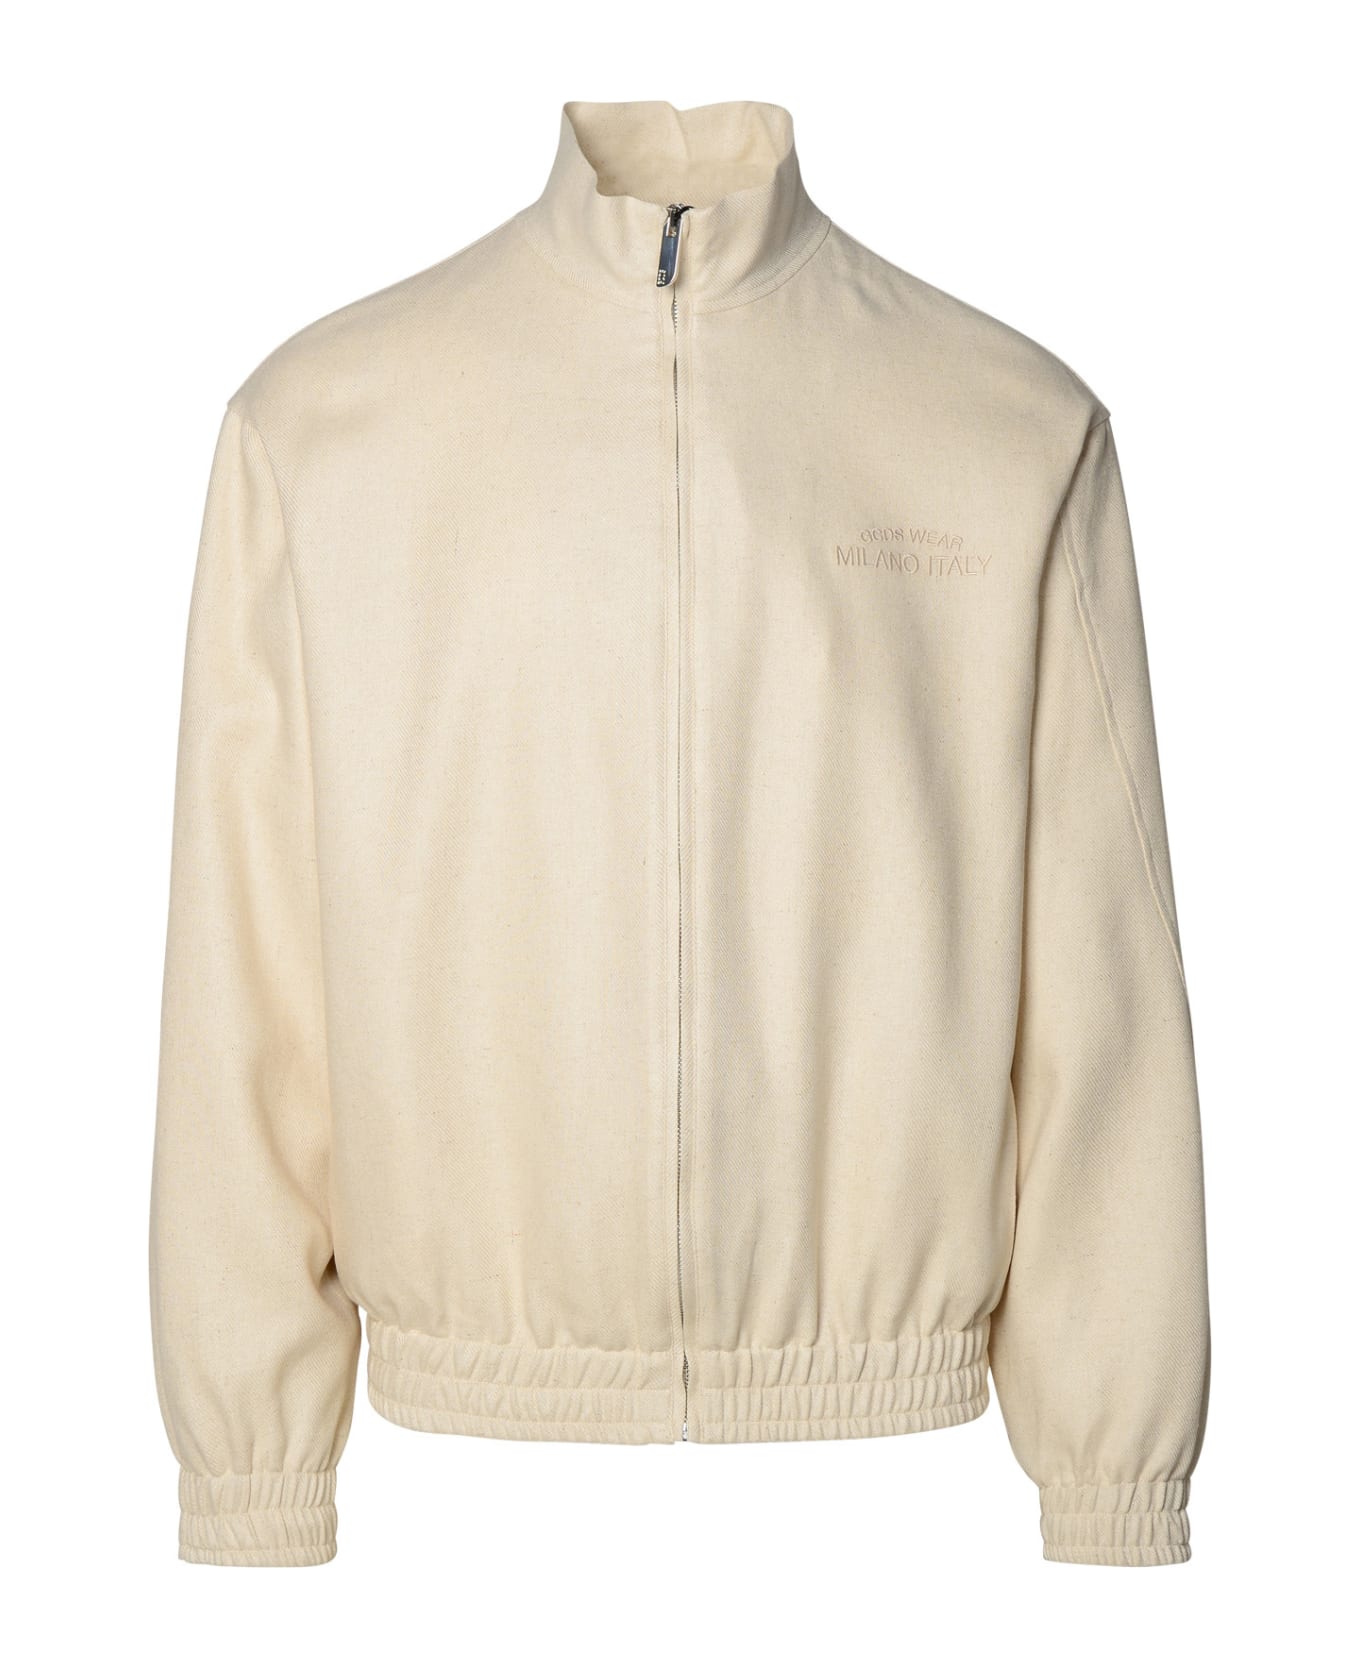 GCDS Ivory Linen Blend Jacket - Off White ニットウェア